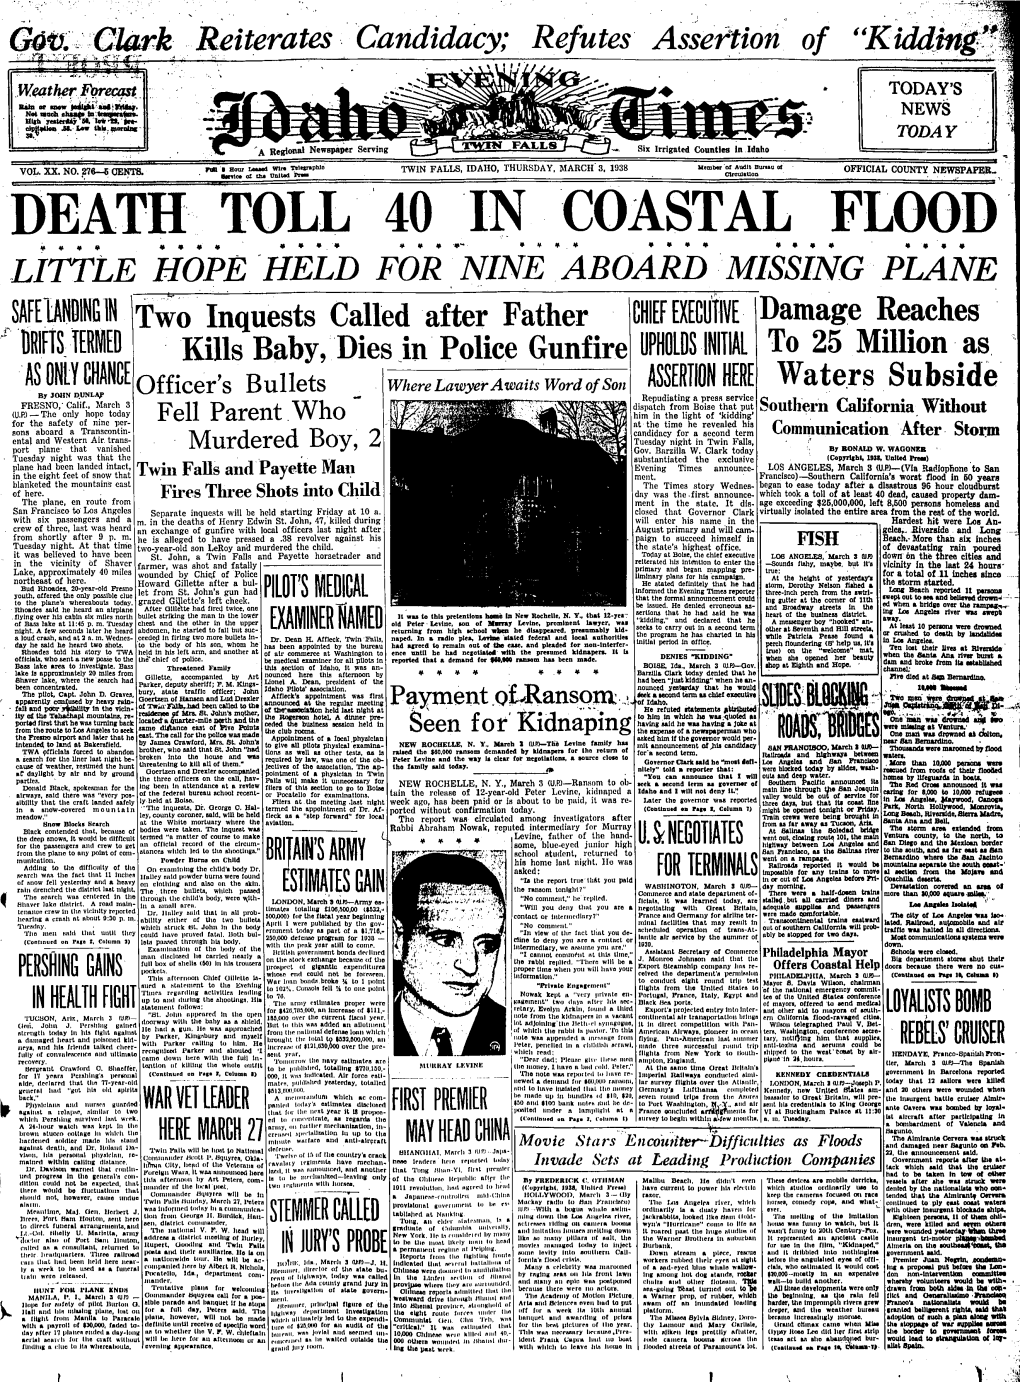 Death Toll 40 in Coastal Flood